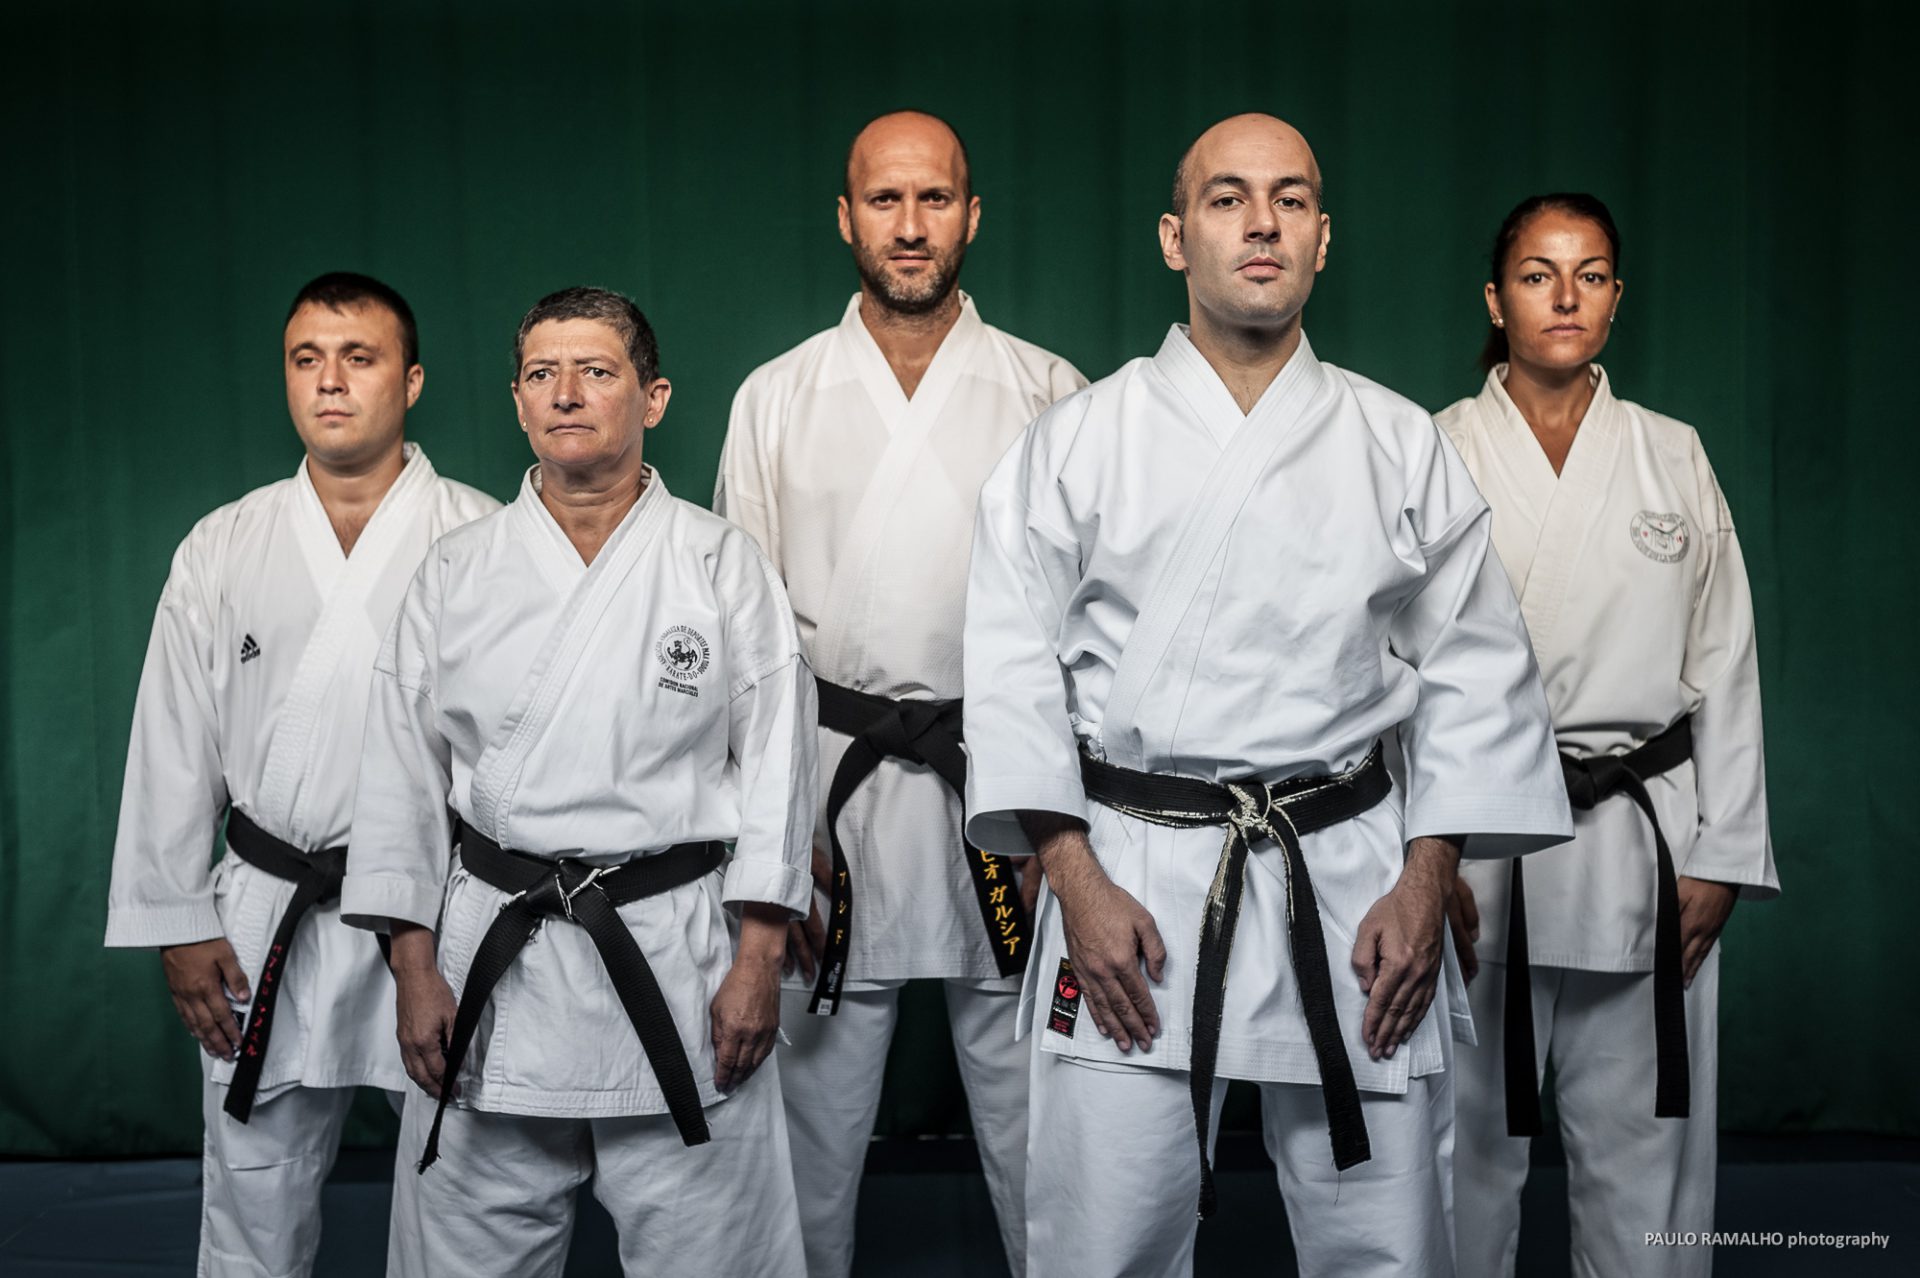 Fotografías publicidad Karate Sevilla | Paulo Ramalho Foto